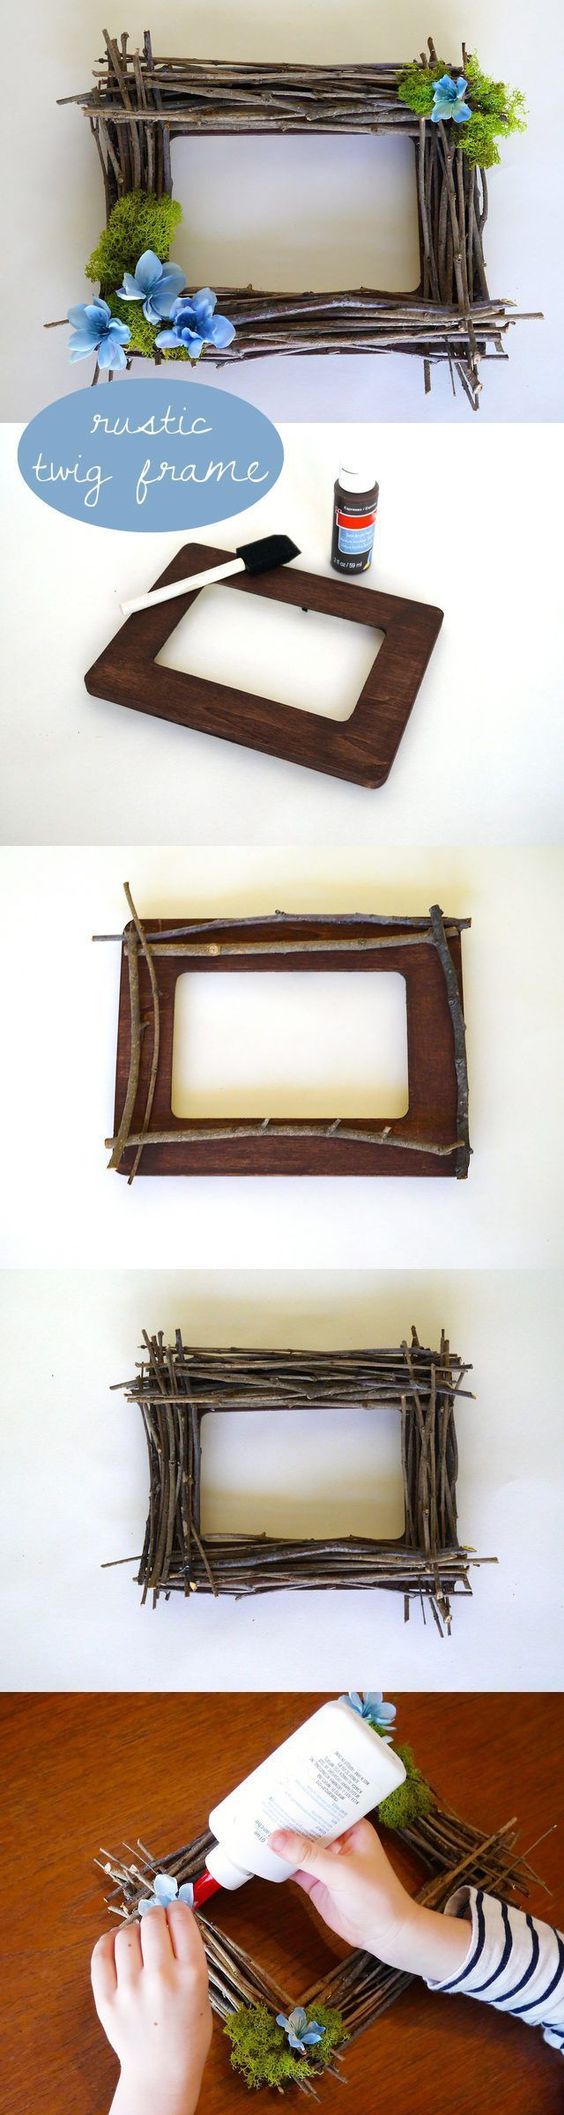 diy rustic twig frame craft